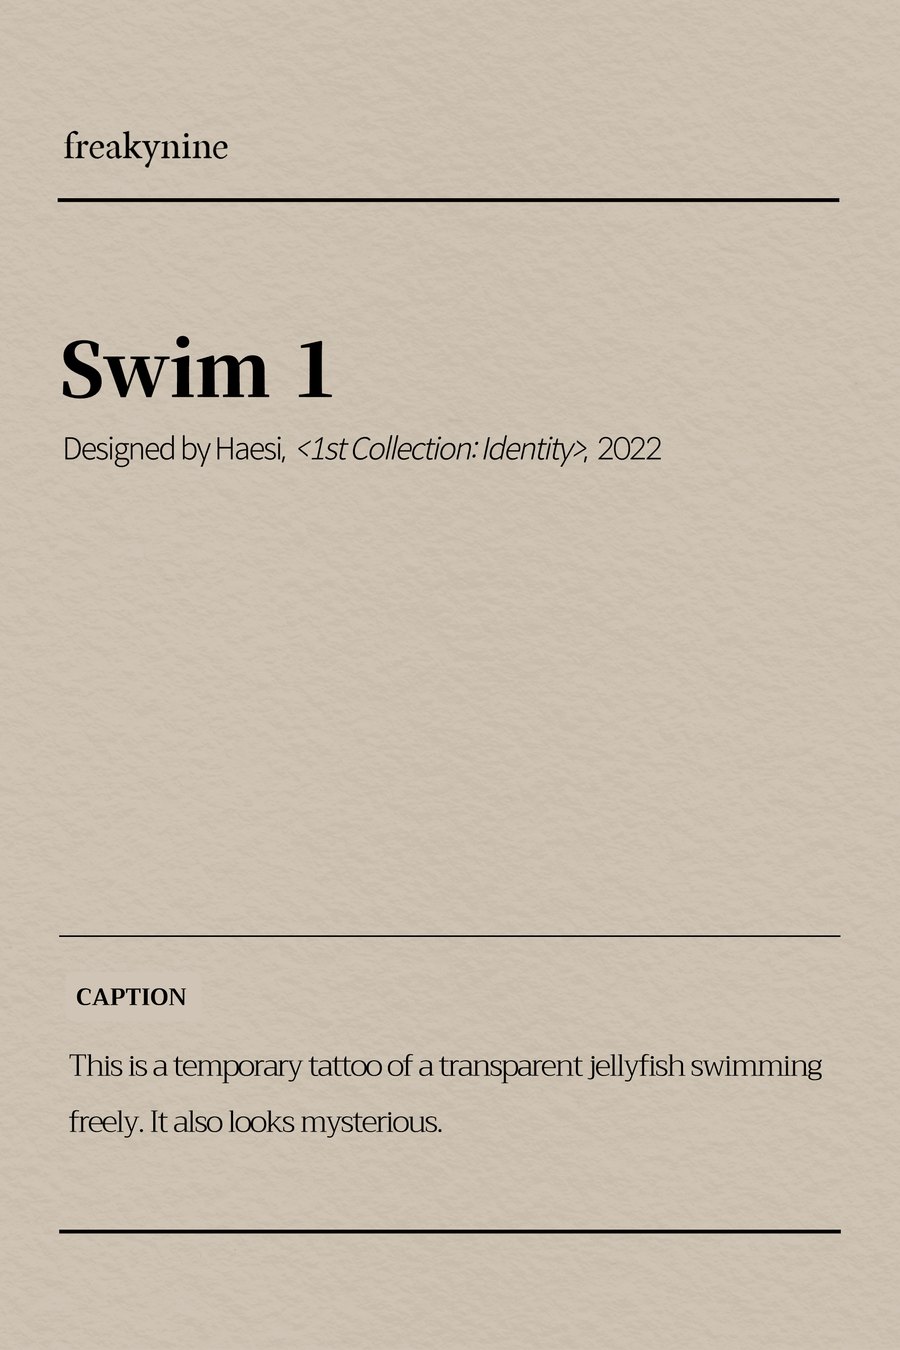 (Haesi) Swim 1 (2EA) - freakynine